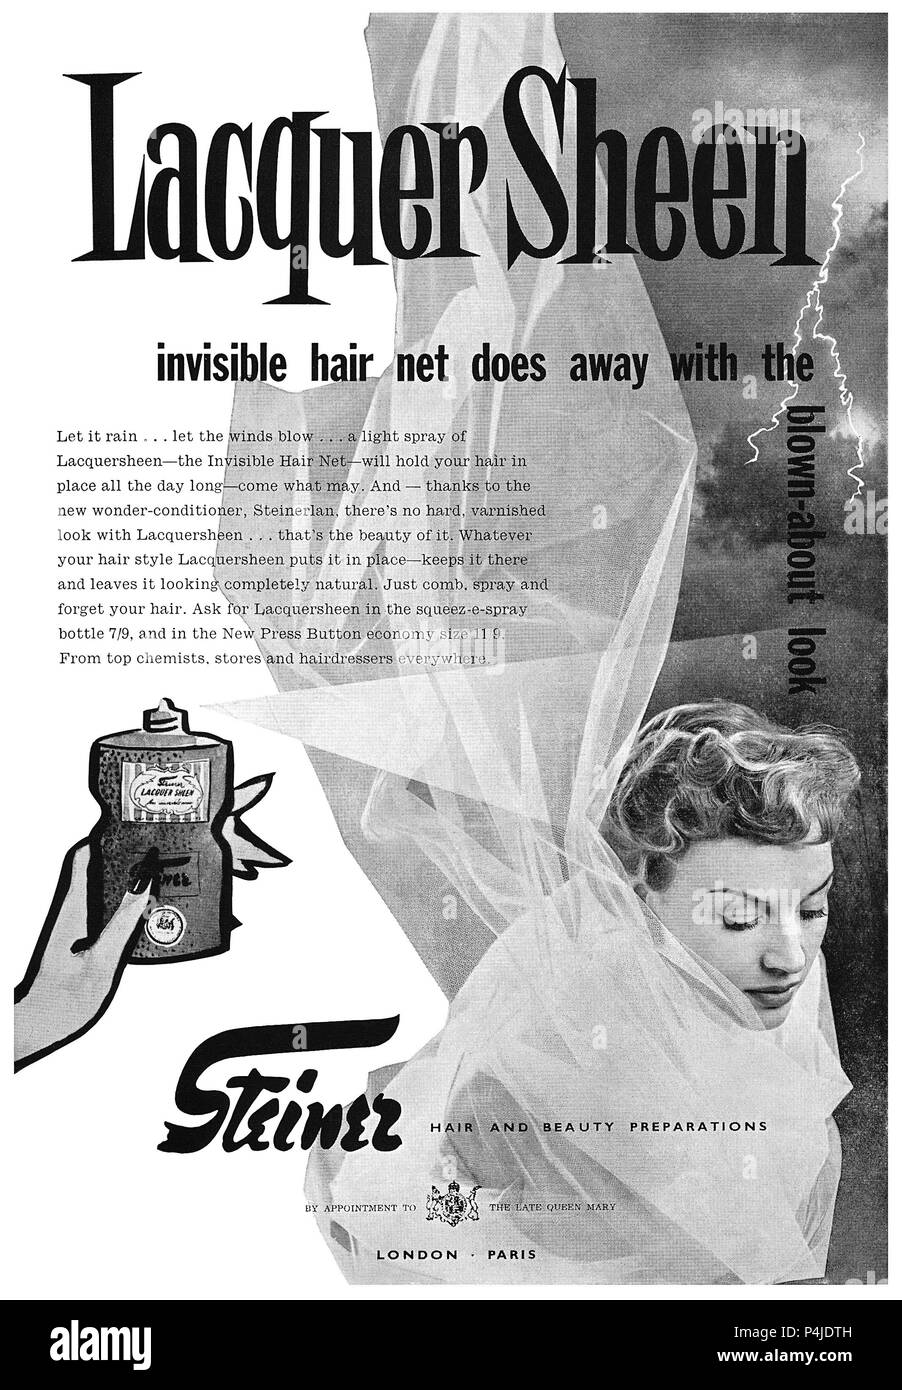 1955 British pubblicità per la lacca Sheen hairspray da Steiner. Foto Stock